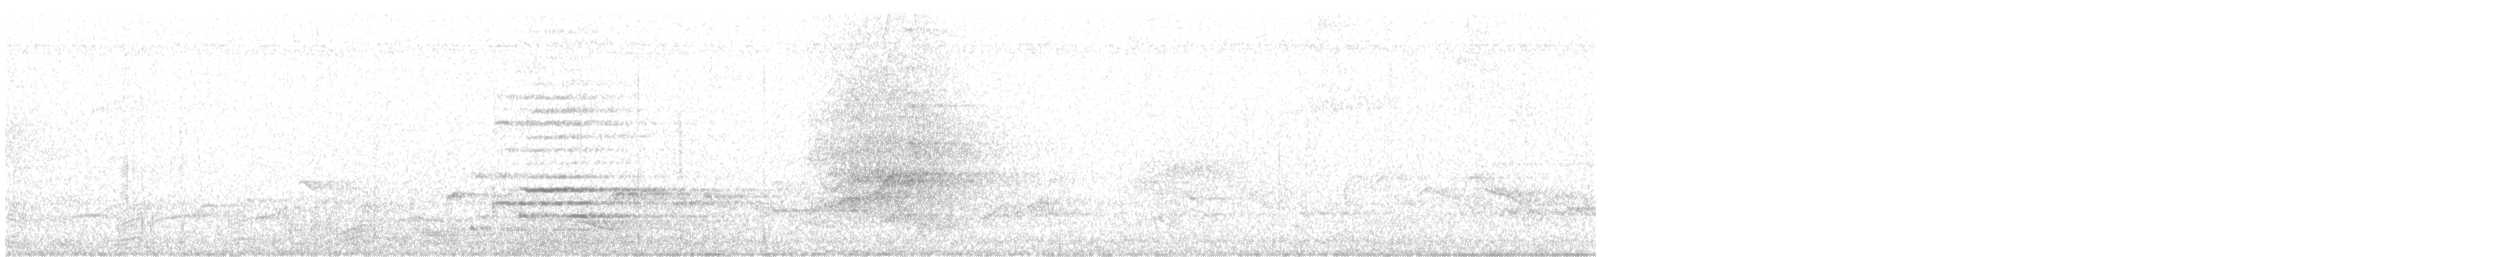 Ak Karınlı Saksağan - ML604881801